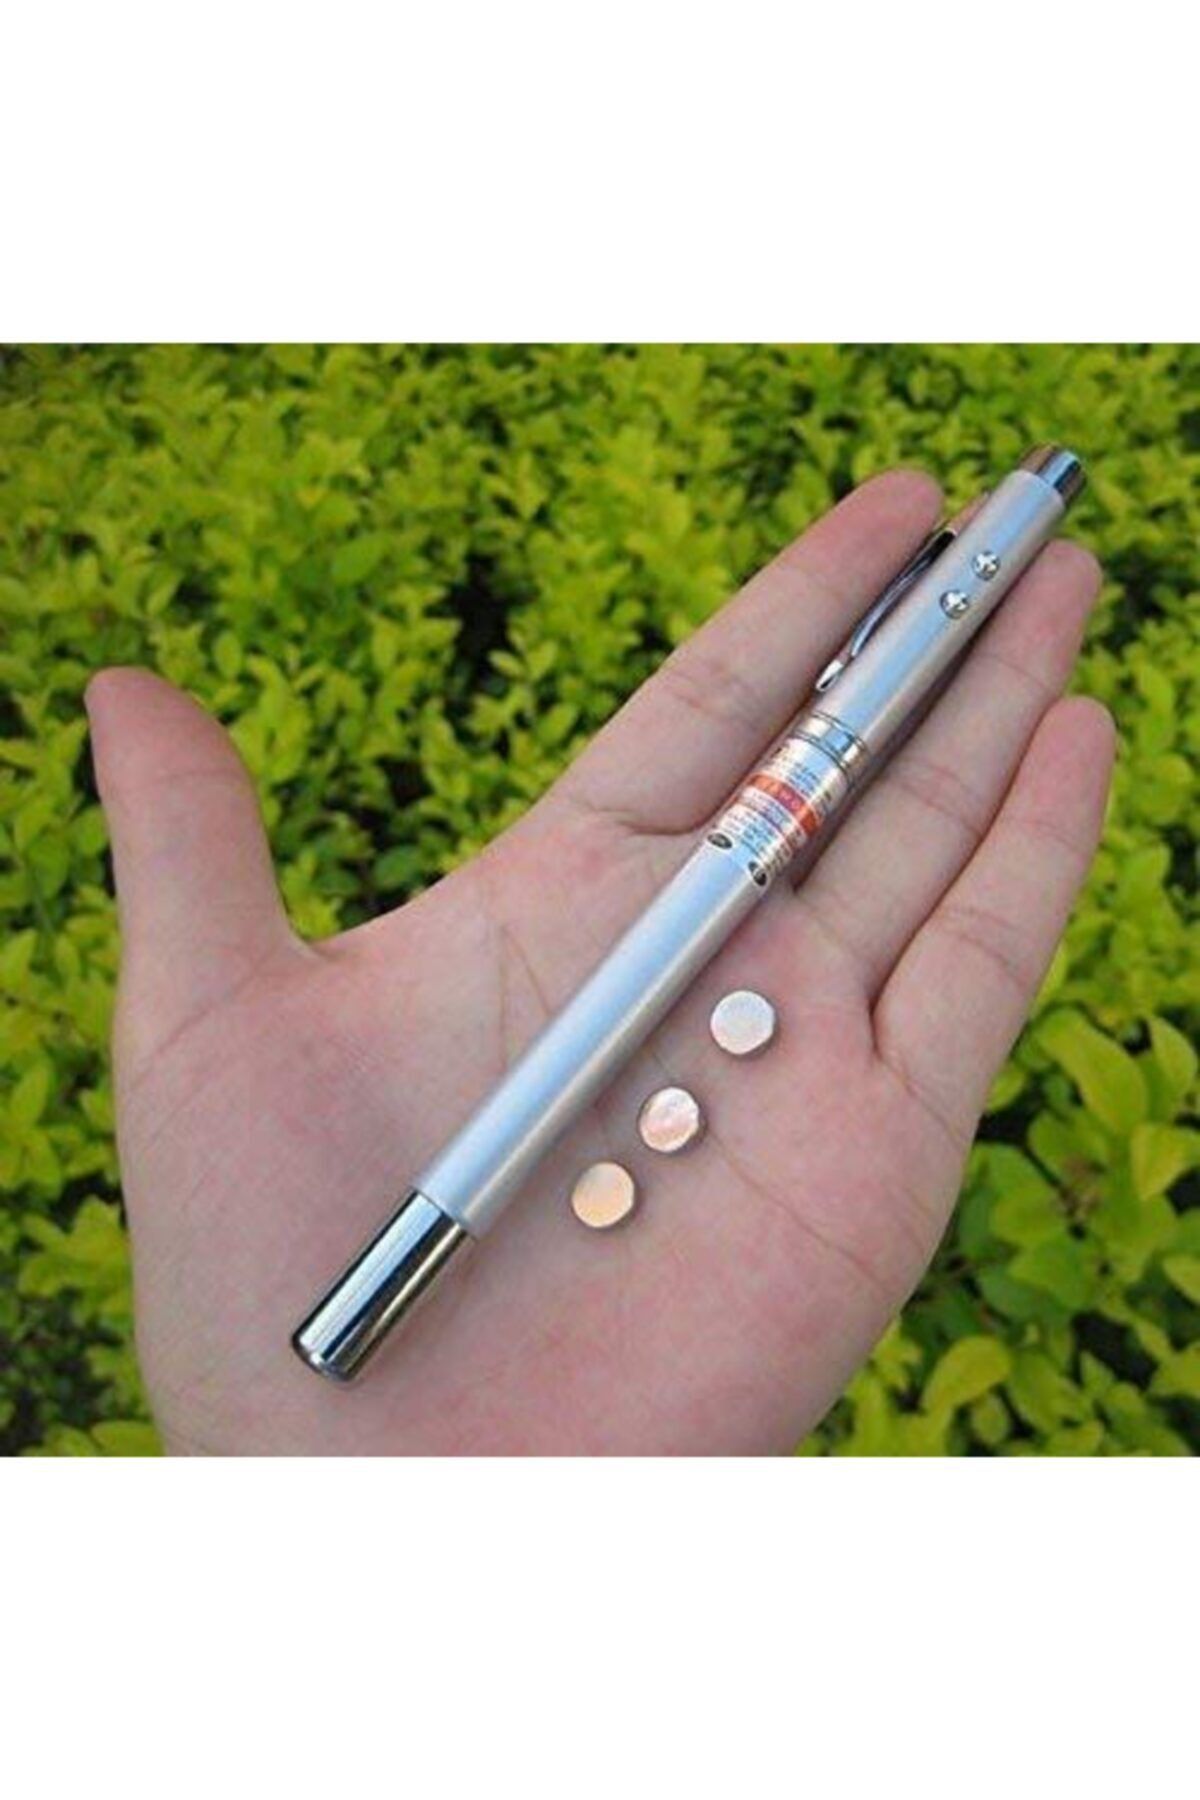 hitteknoloji Ister Kedi Oynat Ister Yazı Yaz - Laser Pen Pointer + Led Işık Lazer Kalem Kutulu